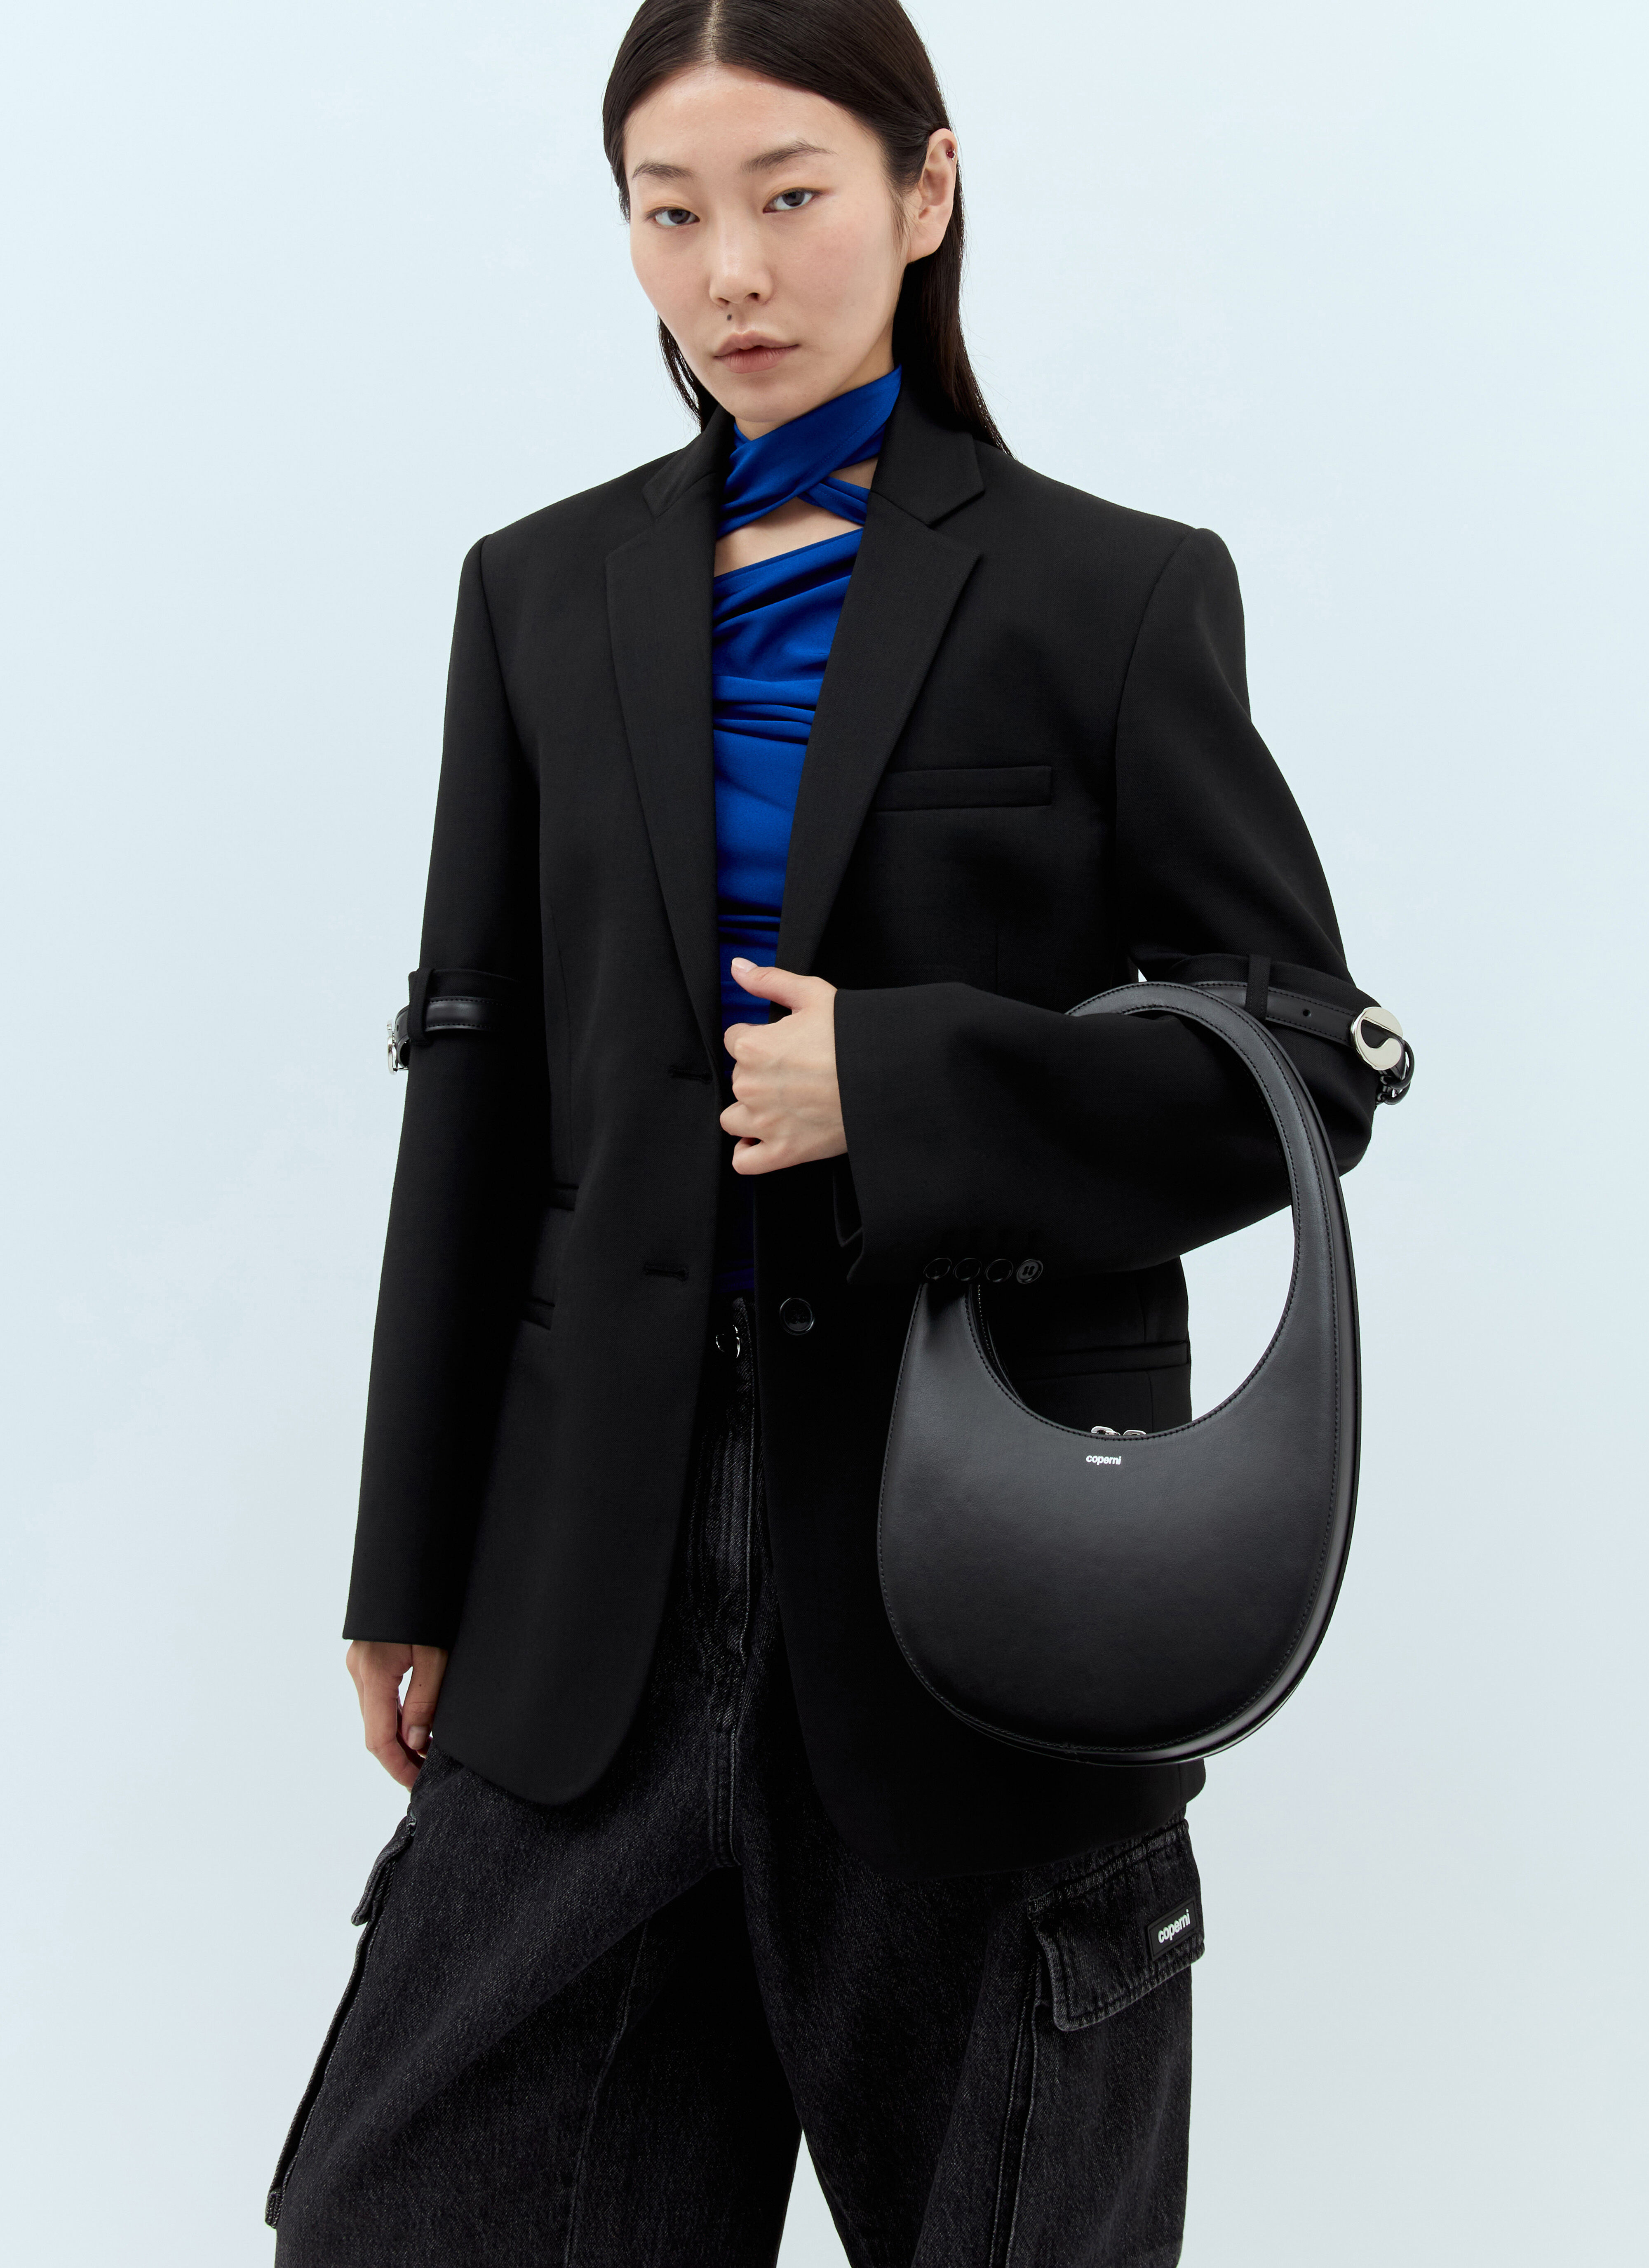 Coperni Swipe Handbag Black cpn0255010